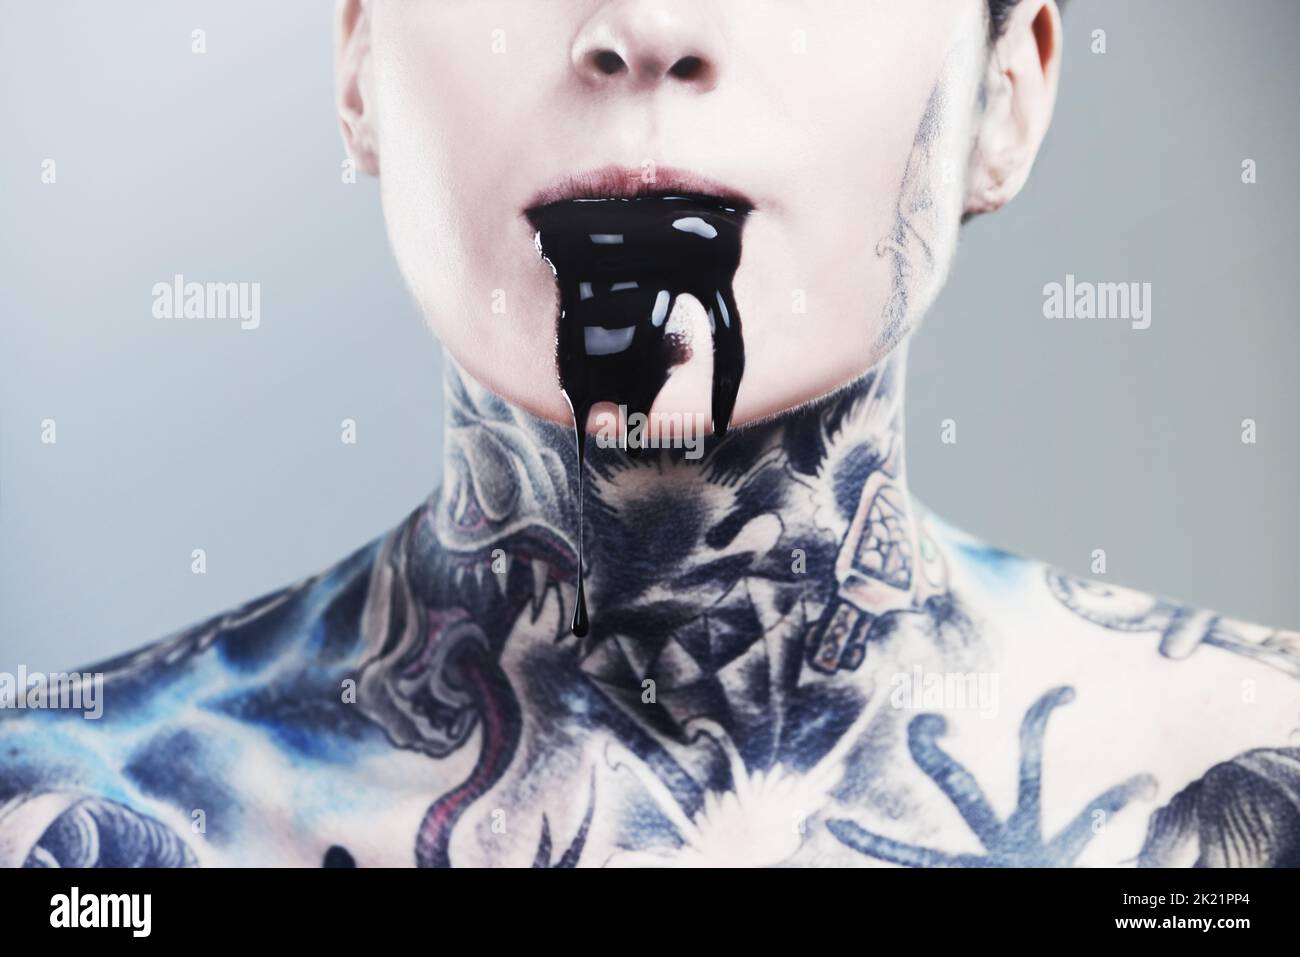 Non è possibile mantenere l'oscurità. Immagine ritagliata di una donna tatuata con inchiostro nero che fuoriesce dalla bocca. Foto Stock